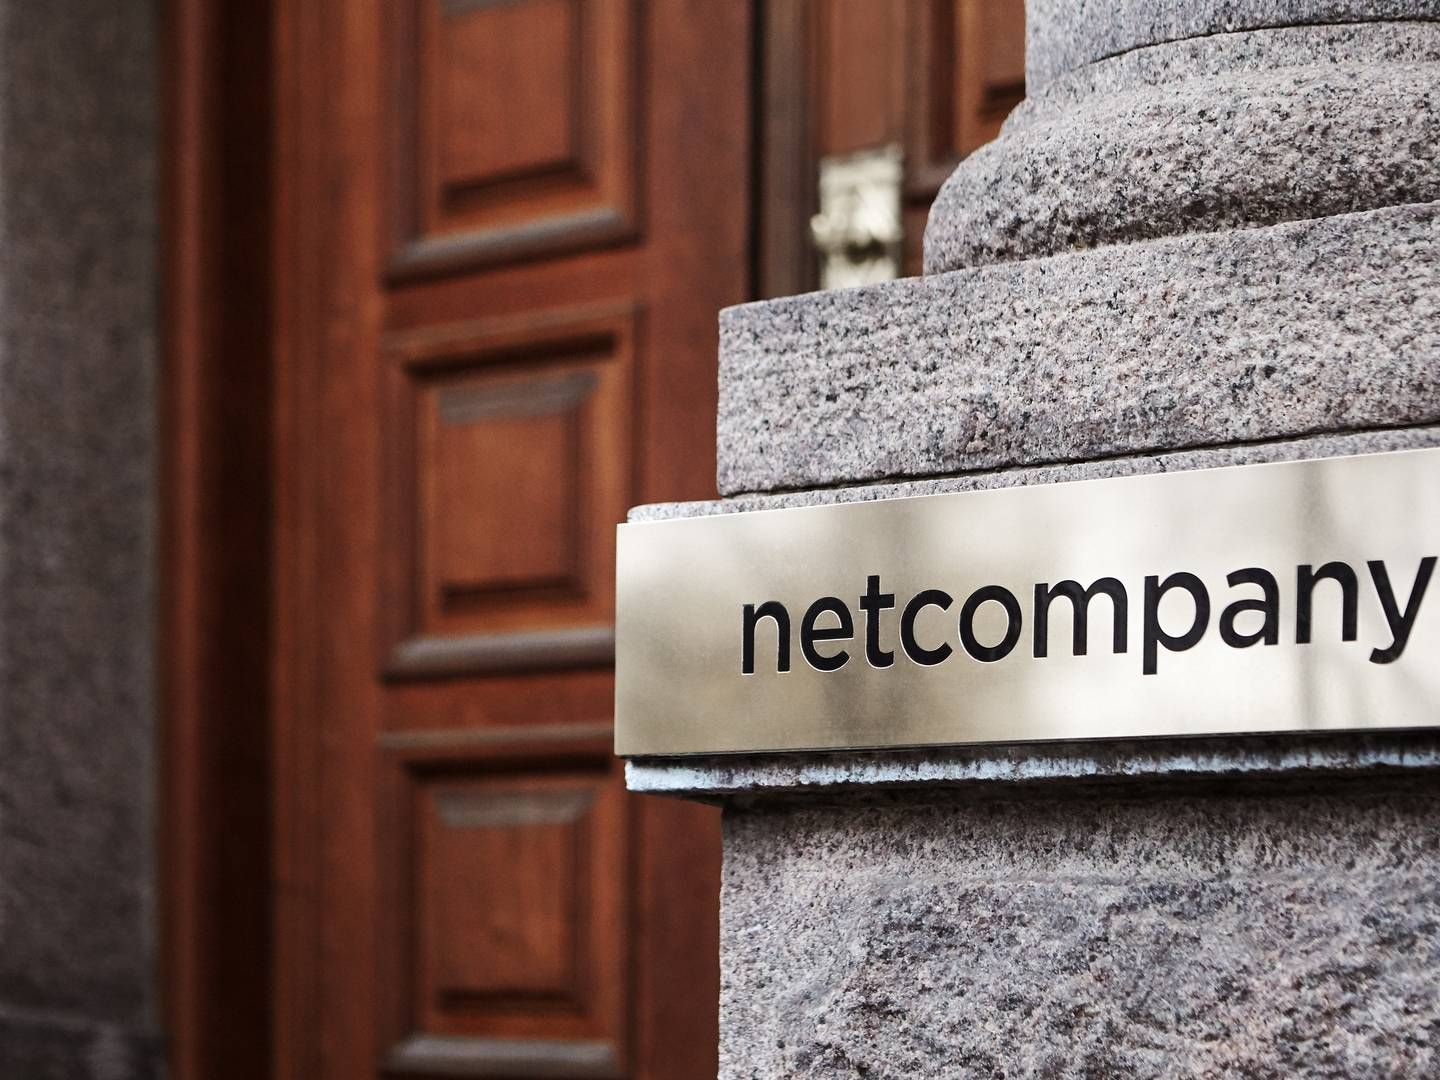 Netcompany har leveret et bud på 80 mio. kr. for opgaven, som it-selskabet sikrer sig efter et turbulent forløb med flere udbud. | Foto: PR